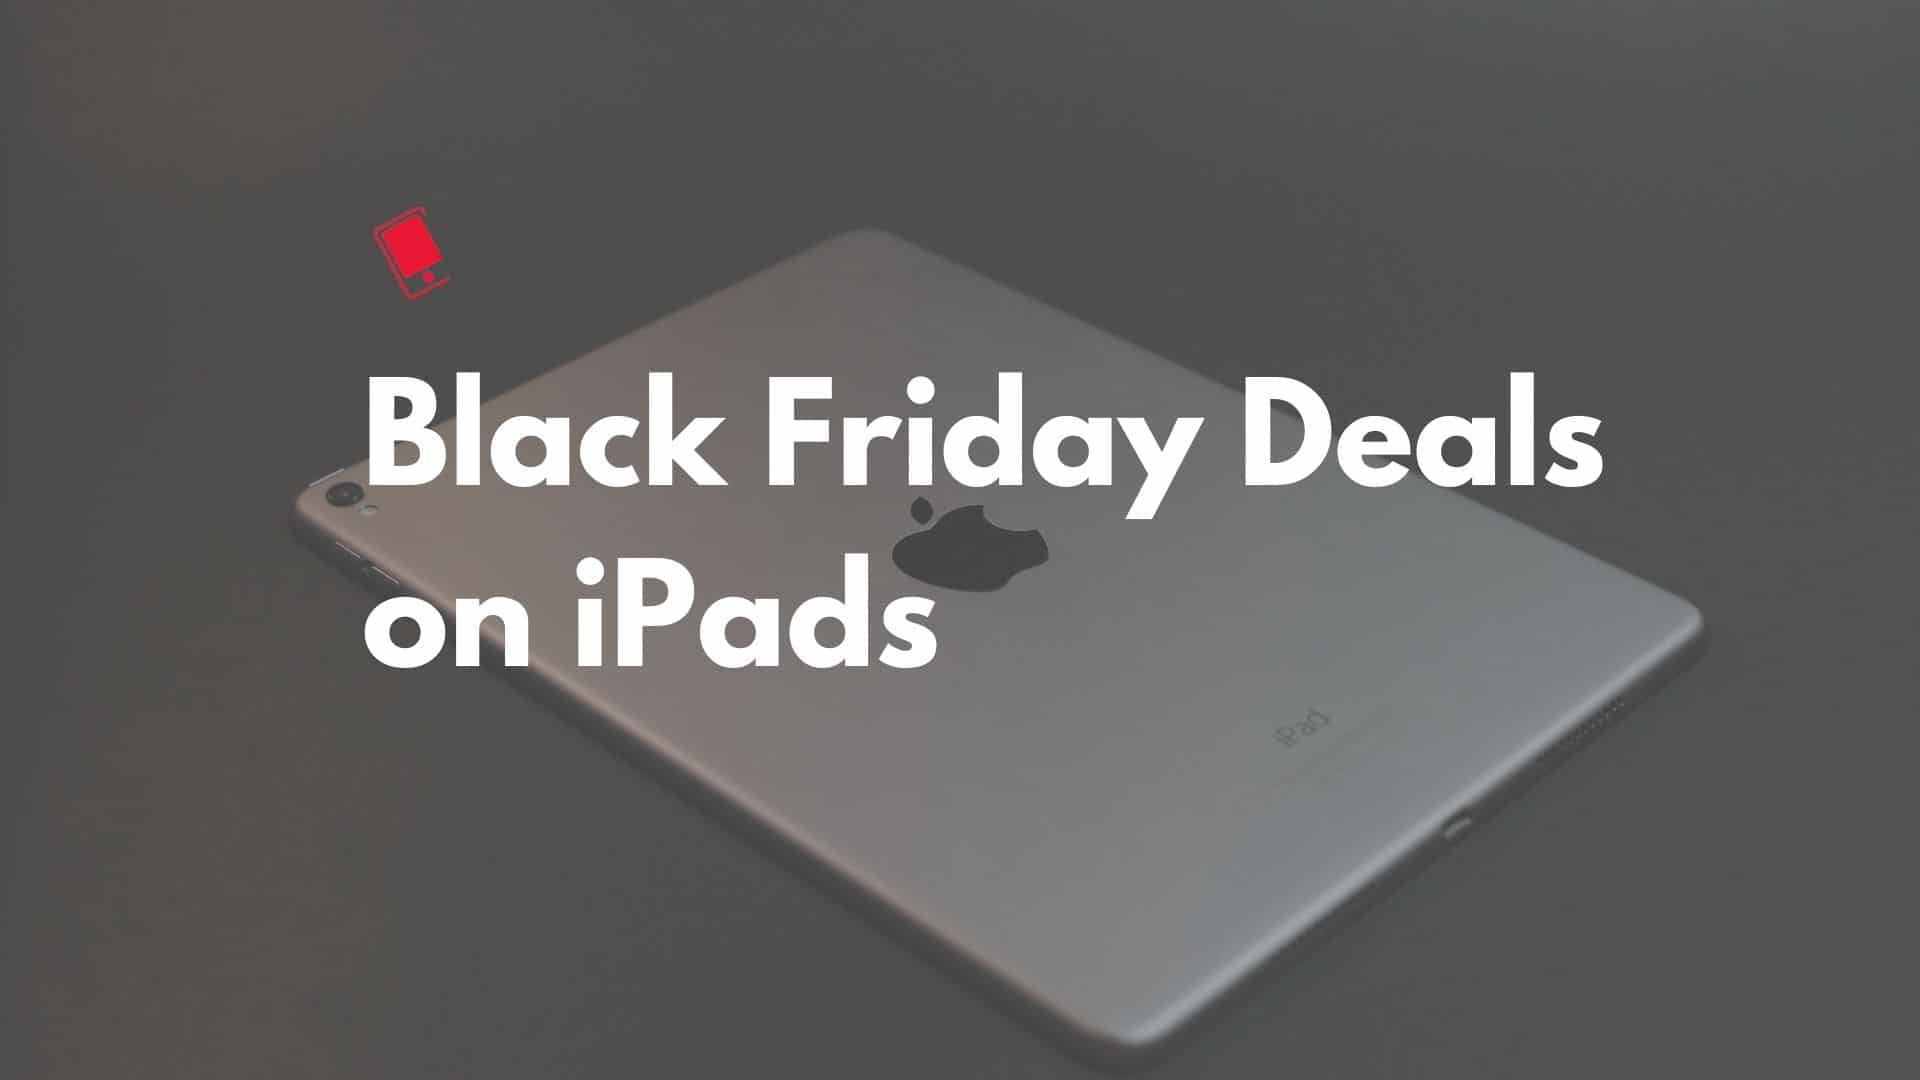 iPad Pro Black Friday Deals